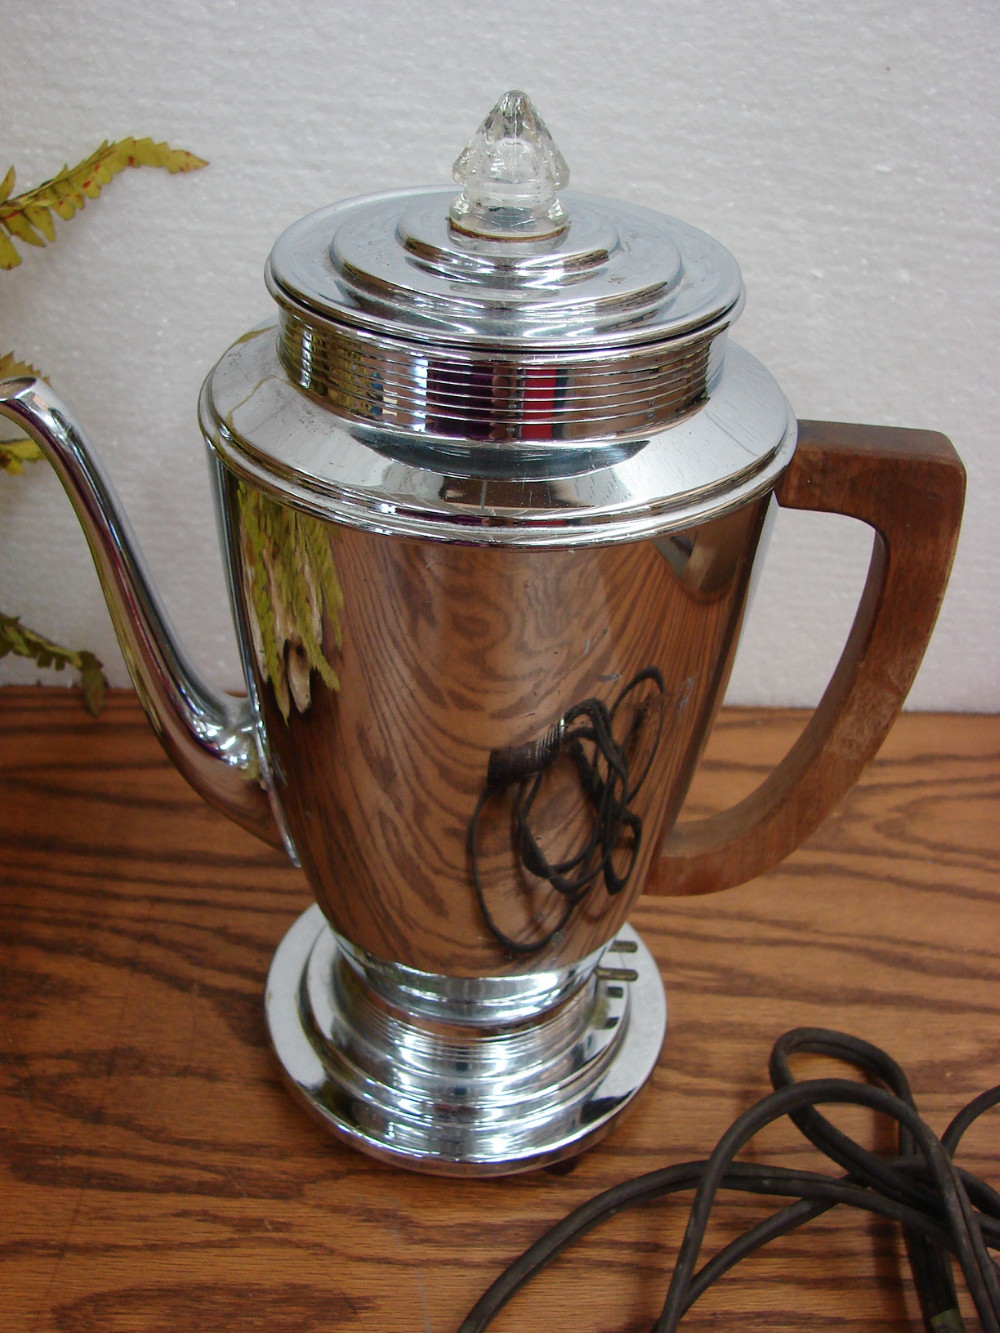 Vintage 1940s Art Deco Farberware Coffee Pot Percolator - no electric cord